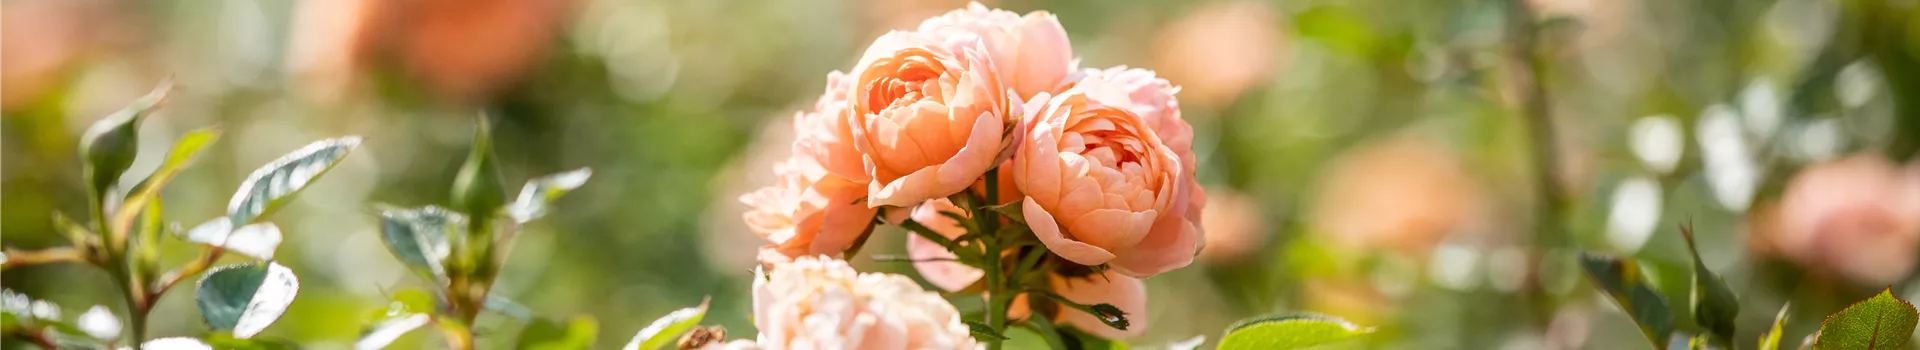 Rosenpflege im Sommer – So bleiben die Rosen gesund